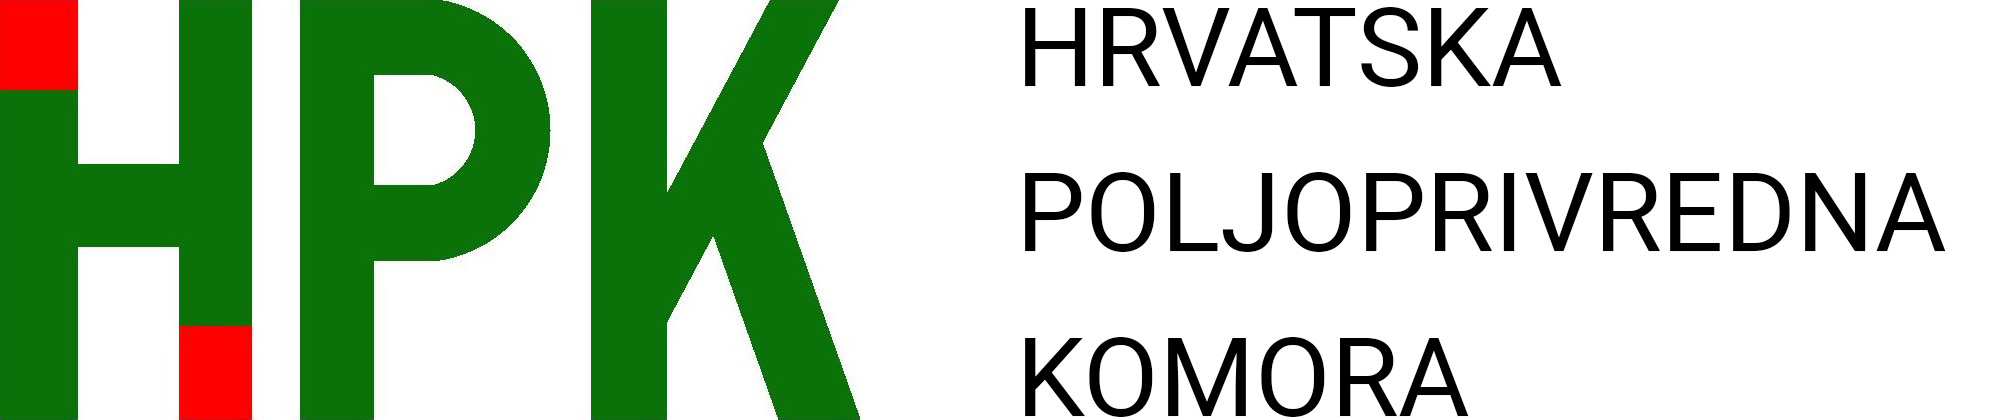 Hrvatska poljoprivredna aplikacija Agrodox od danas besplatna za sve članove HPK | HPK